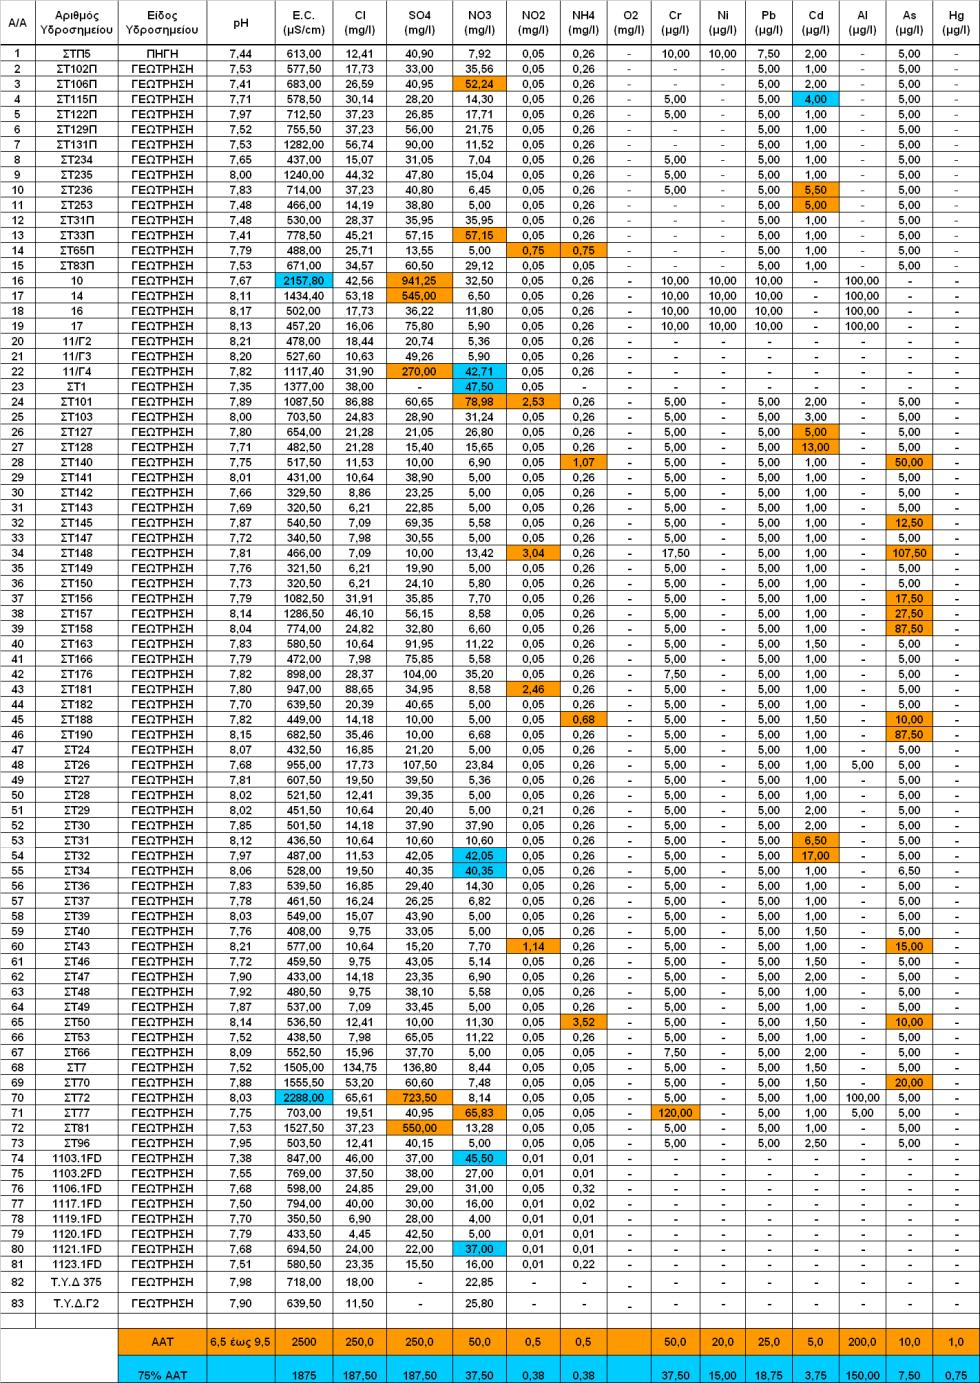 Πίνακας 5.1.1. Πίνακας μέσης τιμής συγκέντρωσης ανά παράμετρο και ανά θέση δειγματοληψίας του ΥΥΣ Σερρών (GR1100010) για τη χρονική περίοδο 2000-2010.